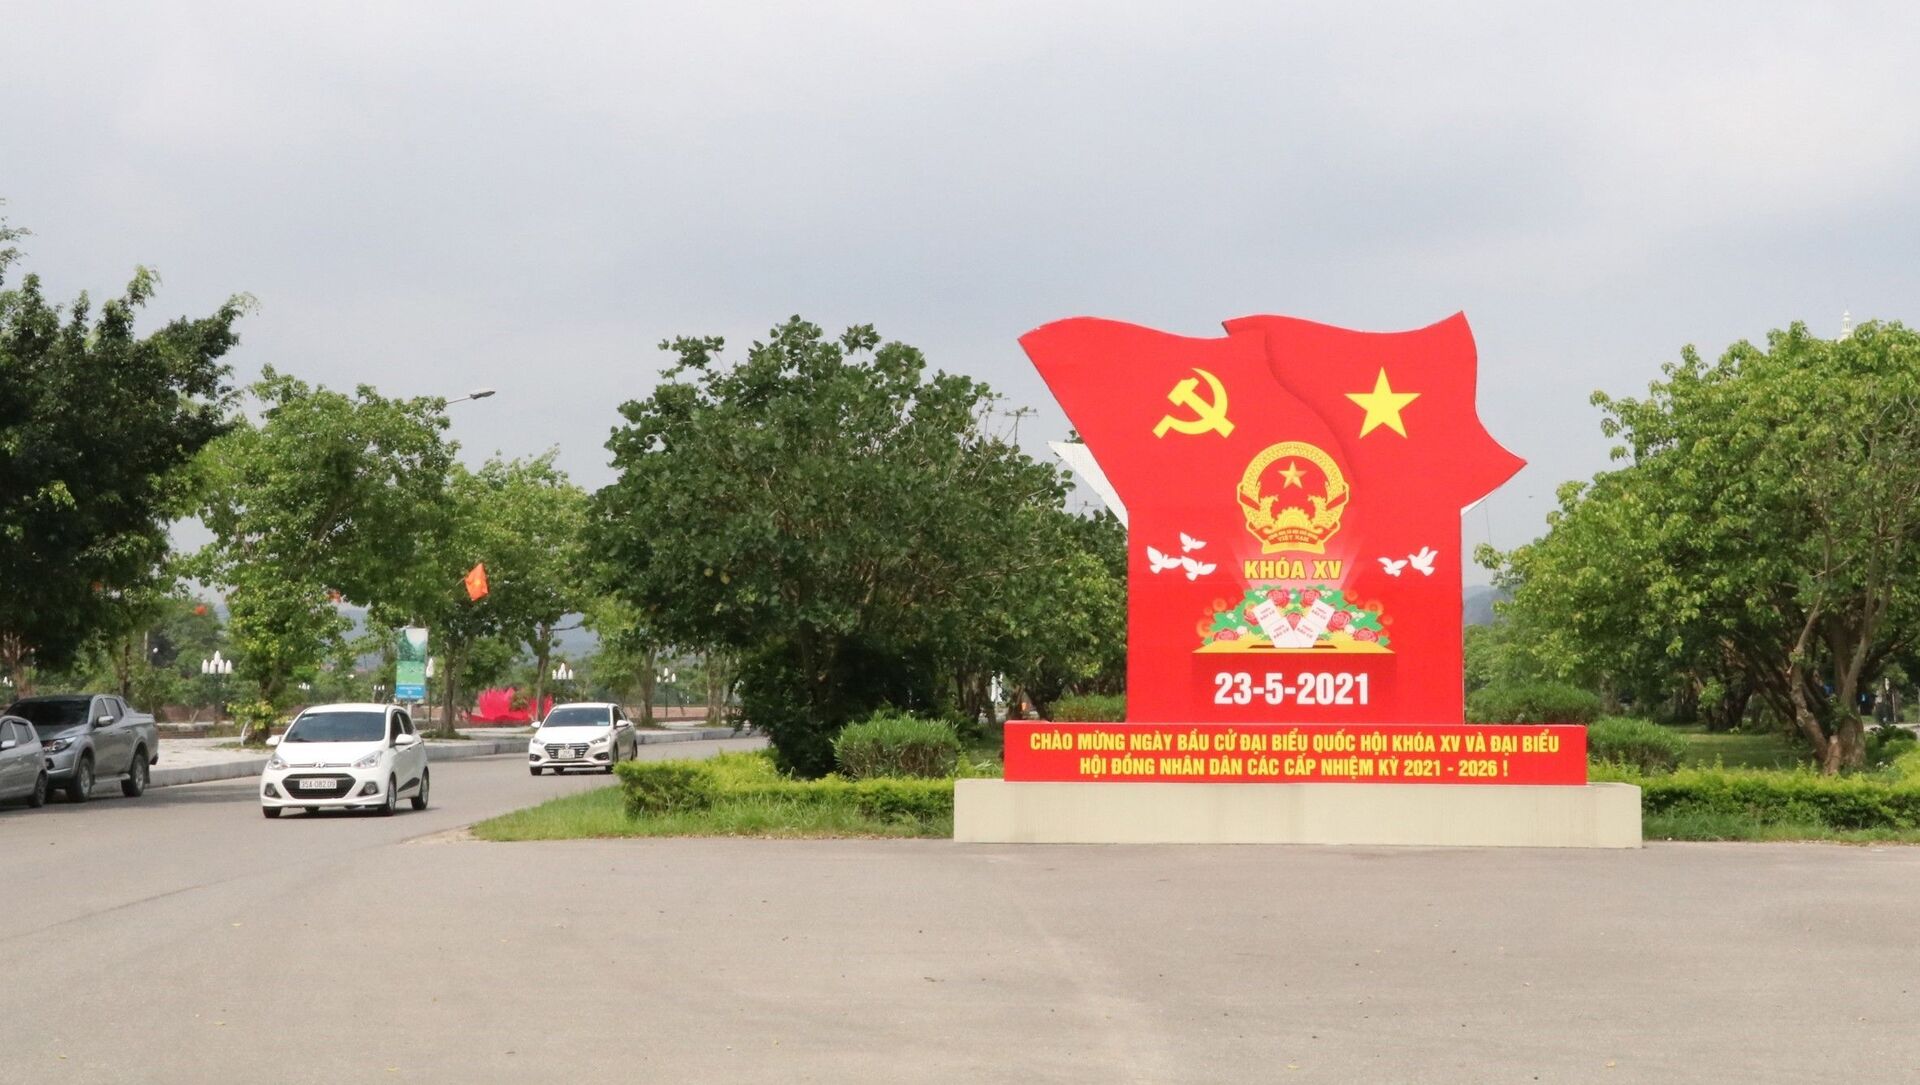 Đẩy mạnh tuyên truyền trực quan về bầu cử trên trục đường Tràng An, thành phố Ninh Bình. - Sputnik Việt Nam, 1920, 20.05.2021